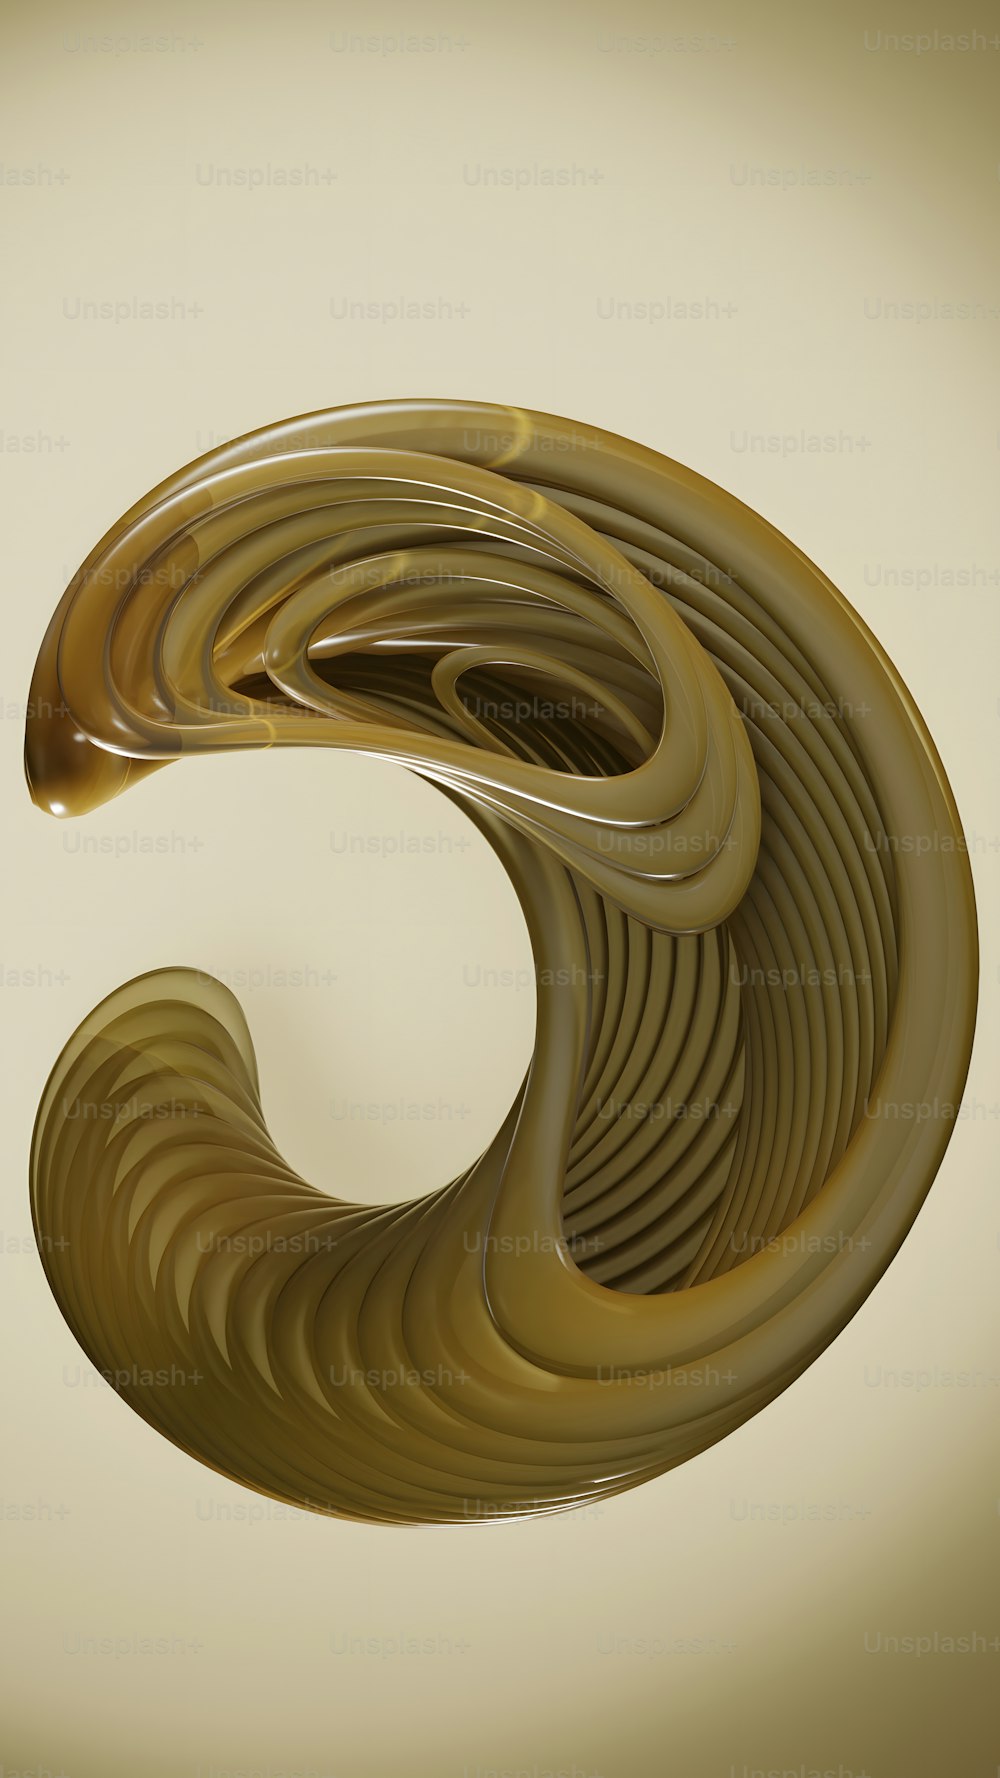 ein computergeneriertes Bild eines spiralähnlichen Objekts